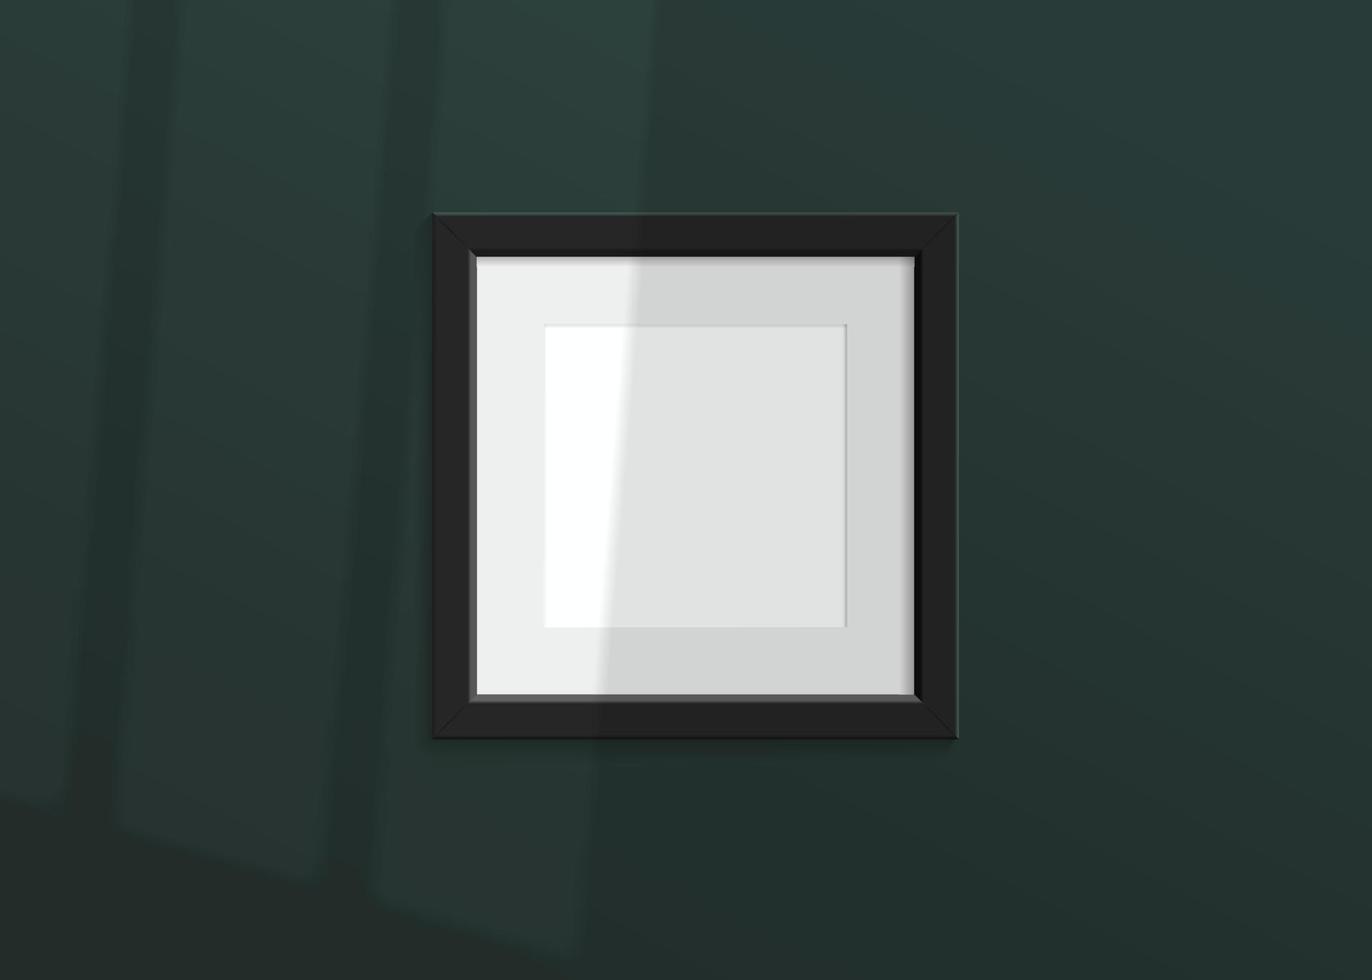 maqueta de lujo vectorial realista con marco de fotos negro. sombra en la pared verde y lugar vacío para tu diseño. Luz suave 3d y sombra superpuesta desde la ventana. cartel cuadrado o pintura. vector